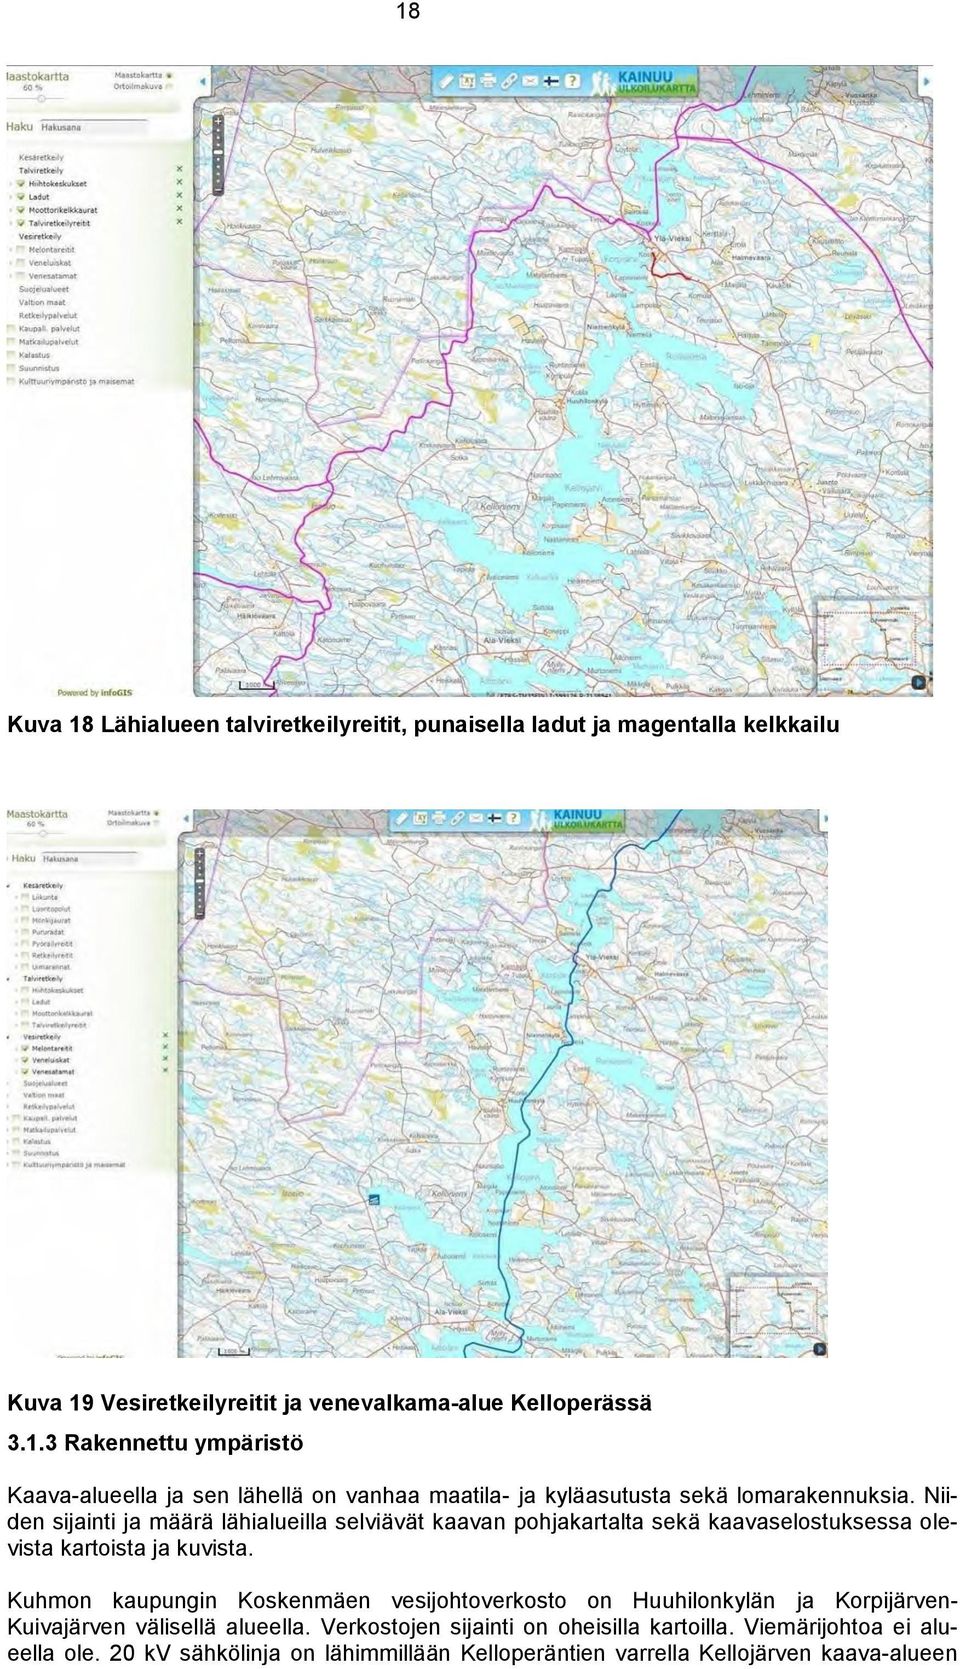 Kuhmon kaupungin Koskenmäen vesijohtoverkosto on Huuhilonkylän ja Korpijärven- Kuivajärven välisellä alueella. Verkostojen sijainti on oheisilla kartoilla.